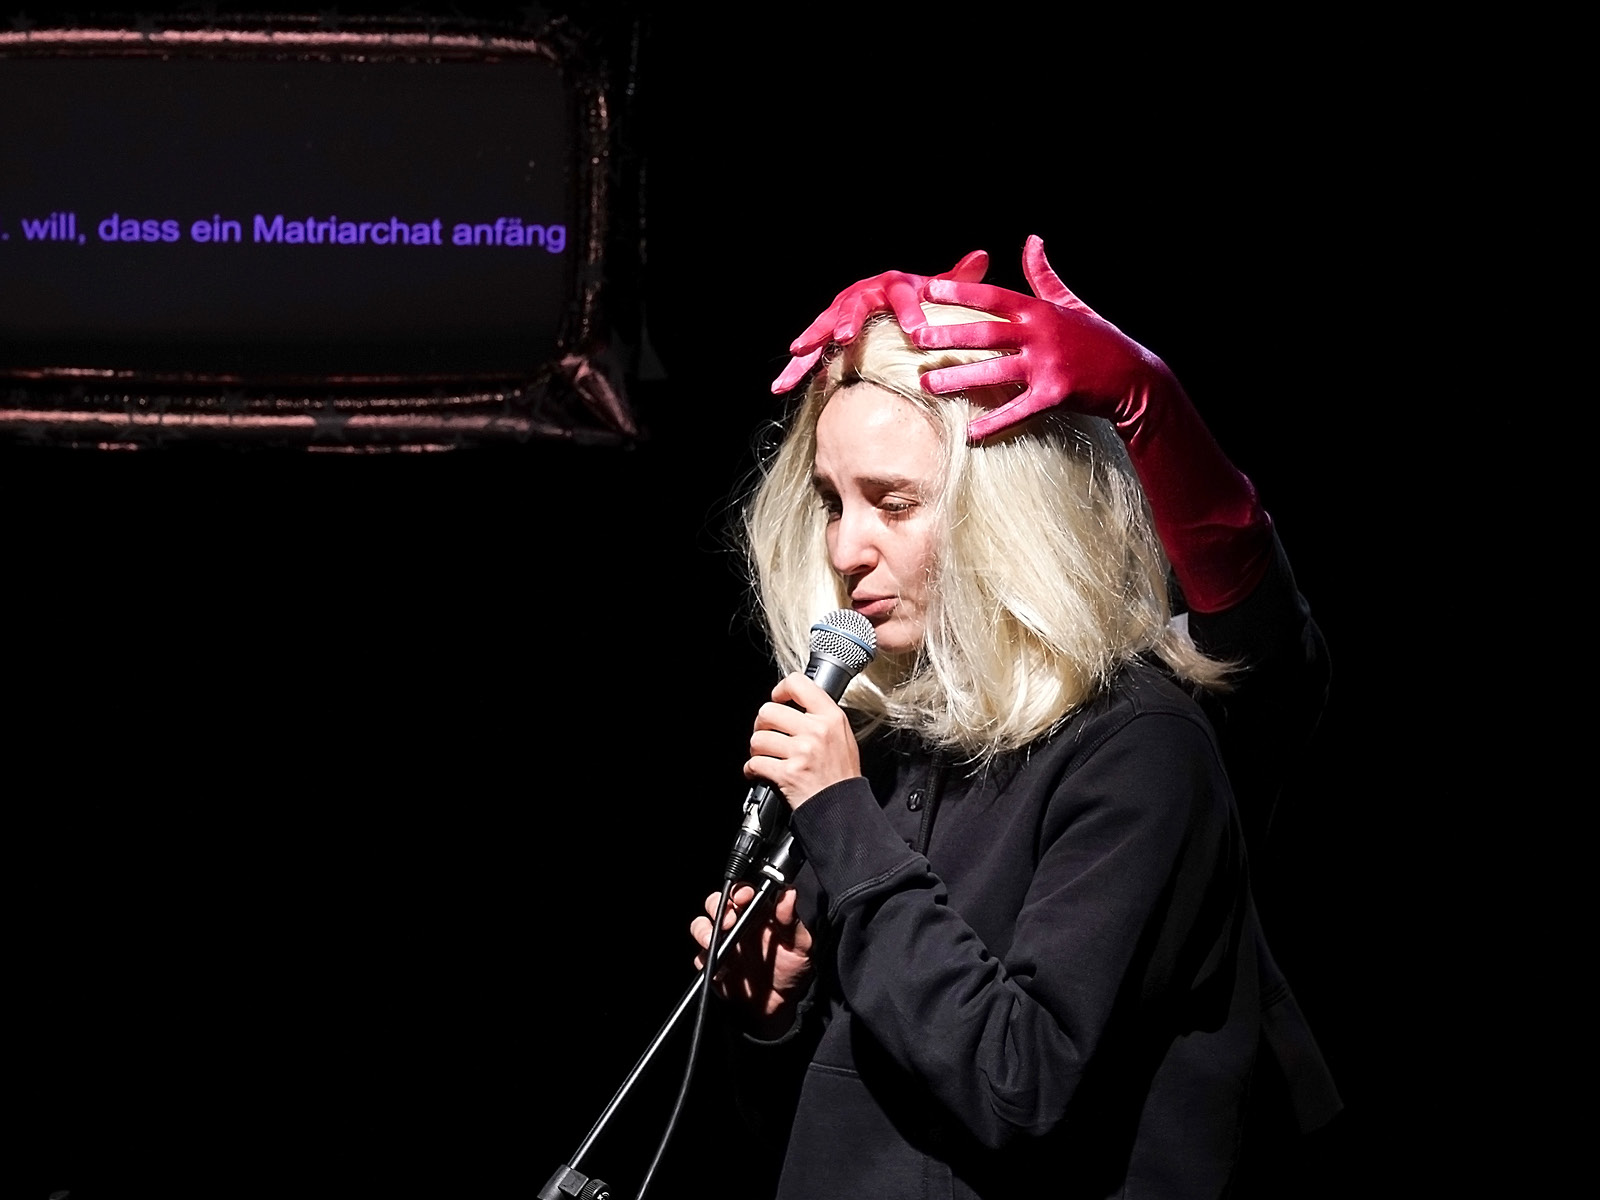 Eine blone Frau steht angespannt am Mikro. Aus dem Dunkel hinter ihr legen sich rosafarbene Samfthandschuhe auf ihren Kopf.